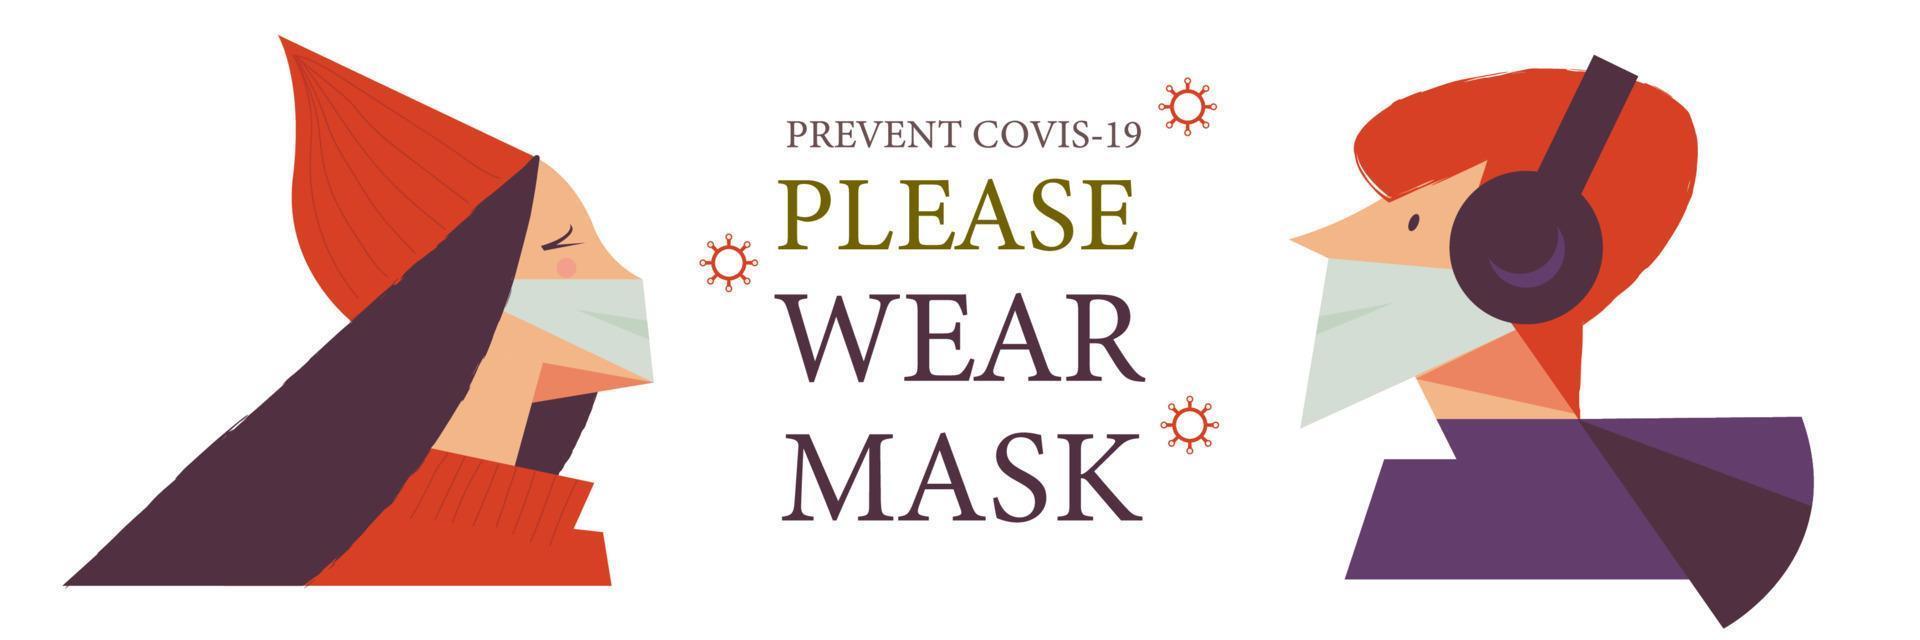 Bitte setzen Sie Ihre Maske auf. Vektorplakat, das die Menschen dazu ermutigt, während der Coronavirus-Pandemie Masken zu tragen. vektor